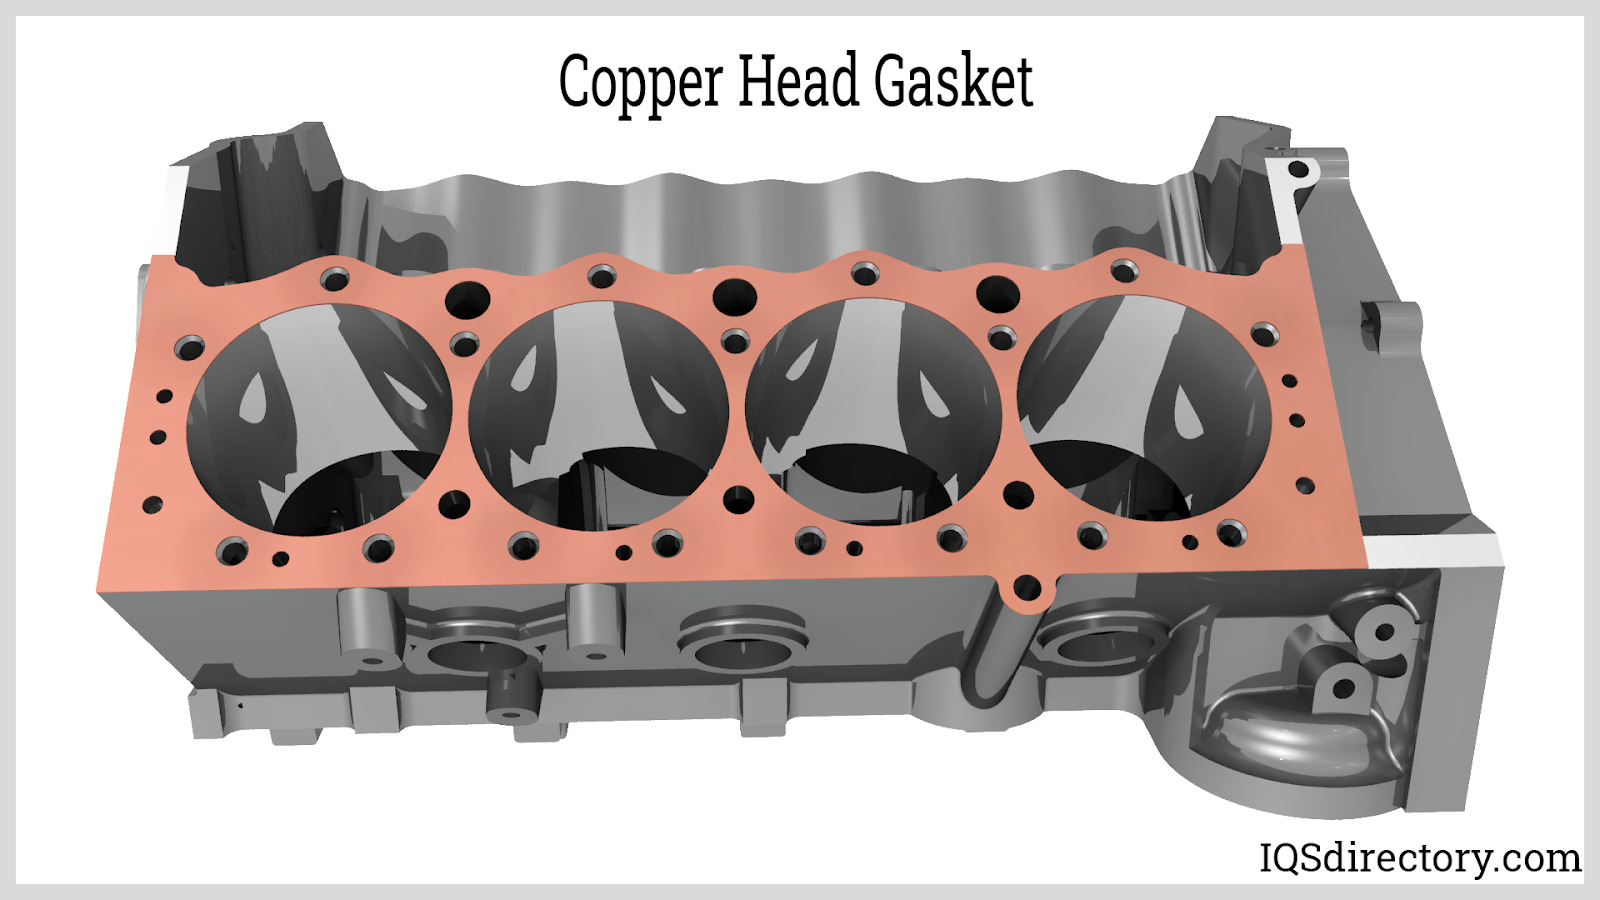 Figure 2.3: Copper Head Gasket 2